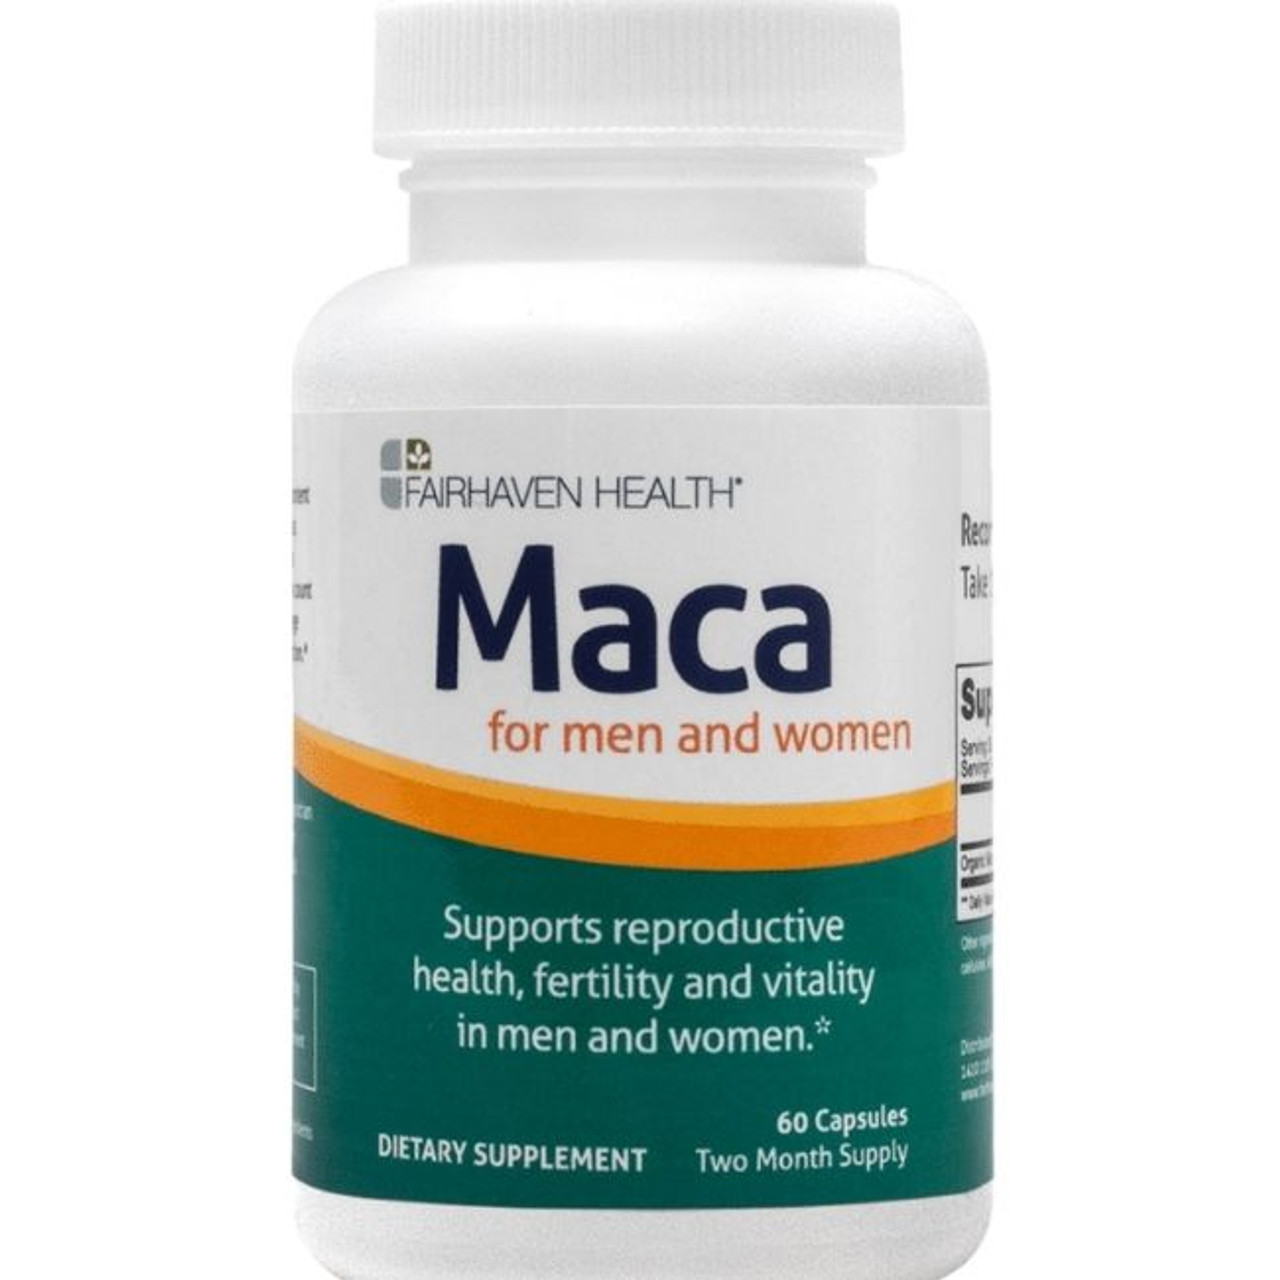 Benefits of Maca Supplements